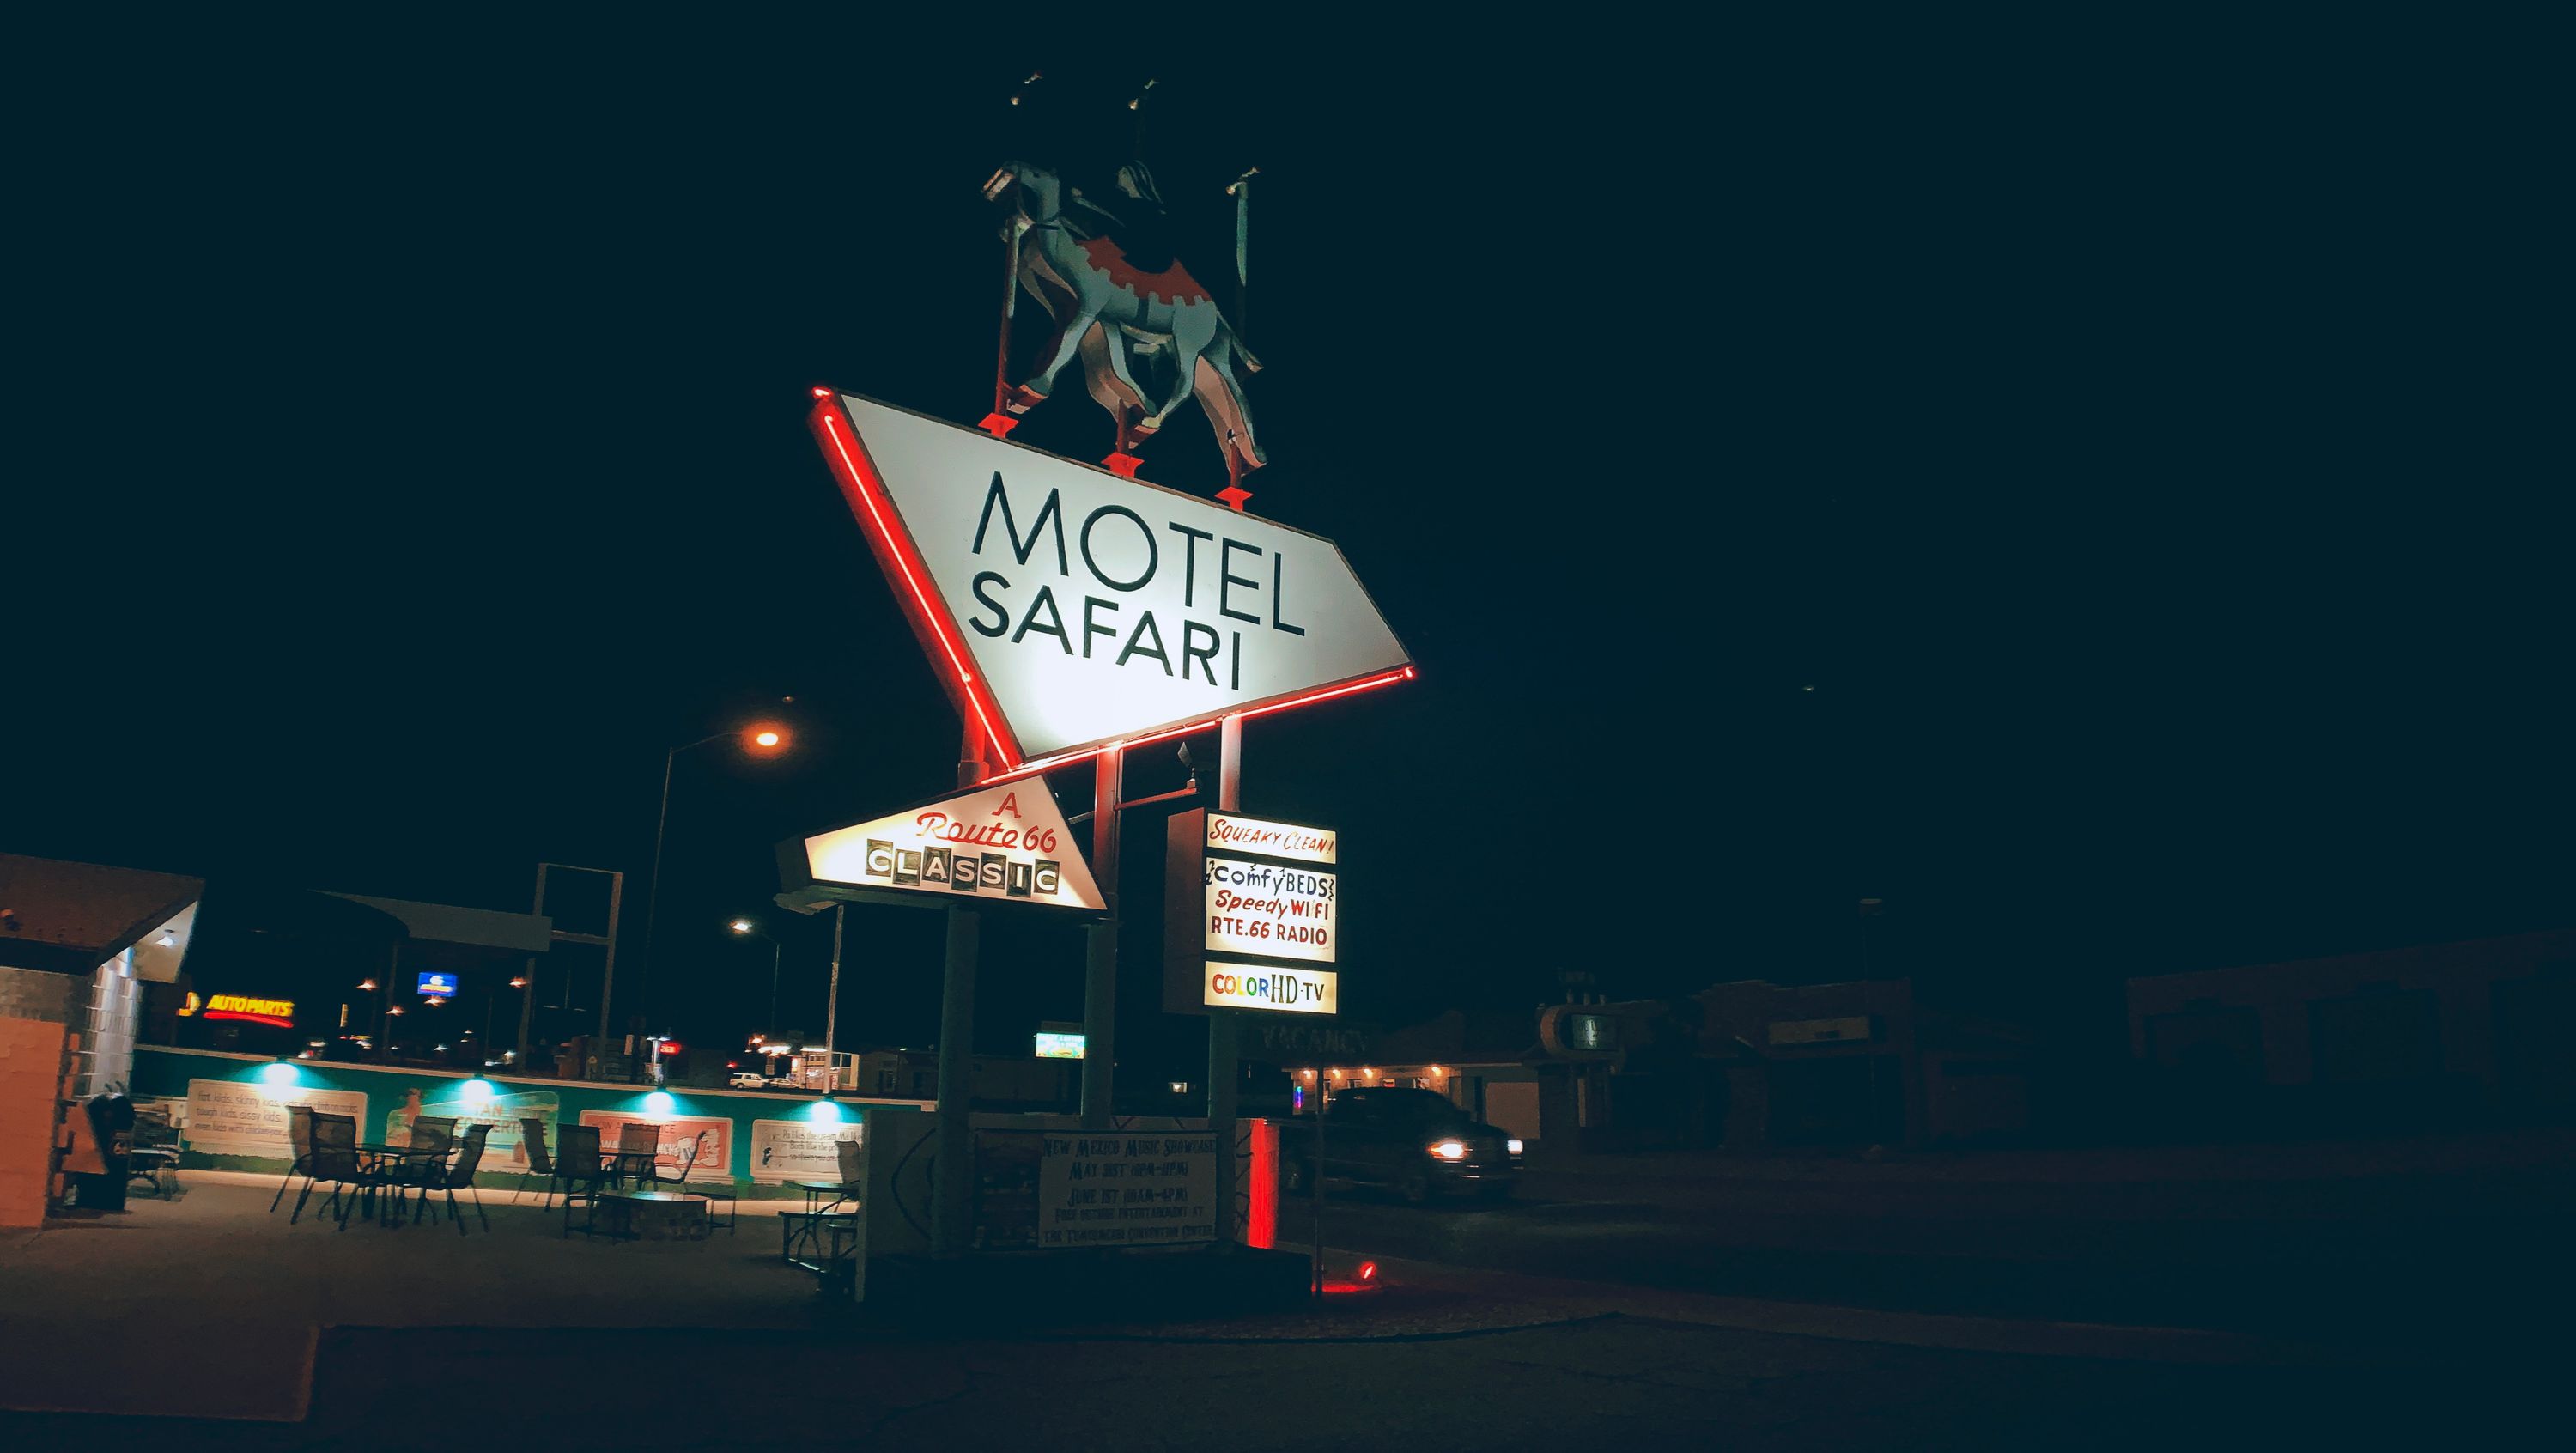 Motel Safari in Tucumcari, New Mexico